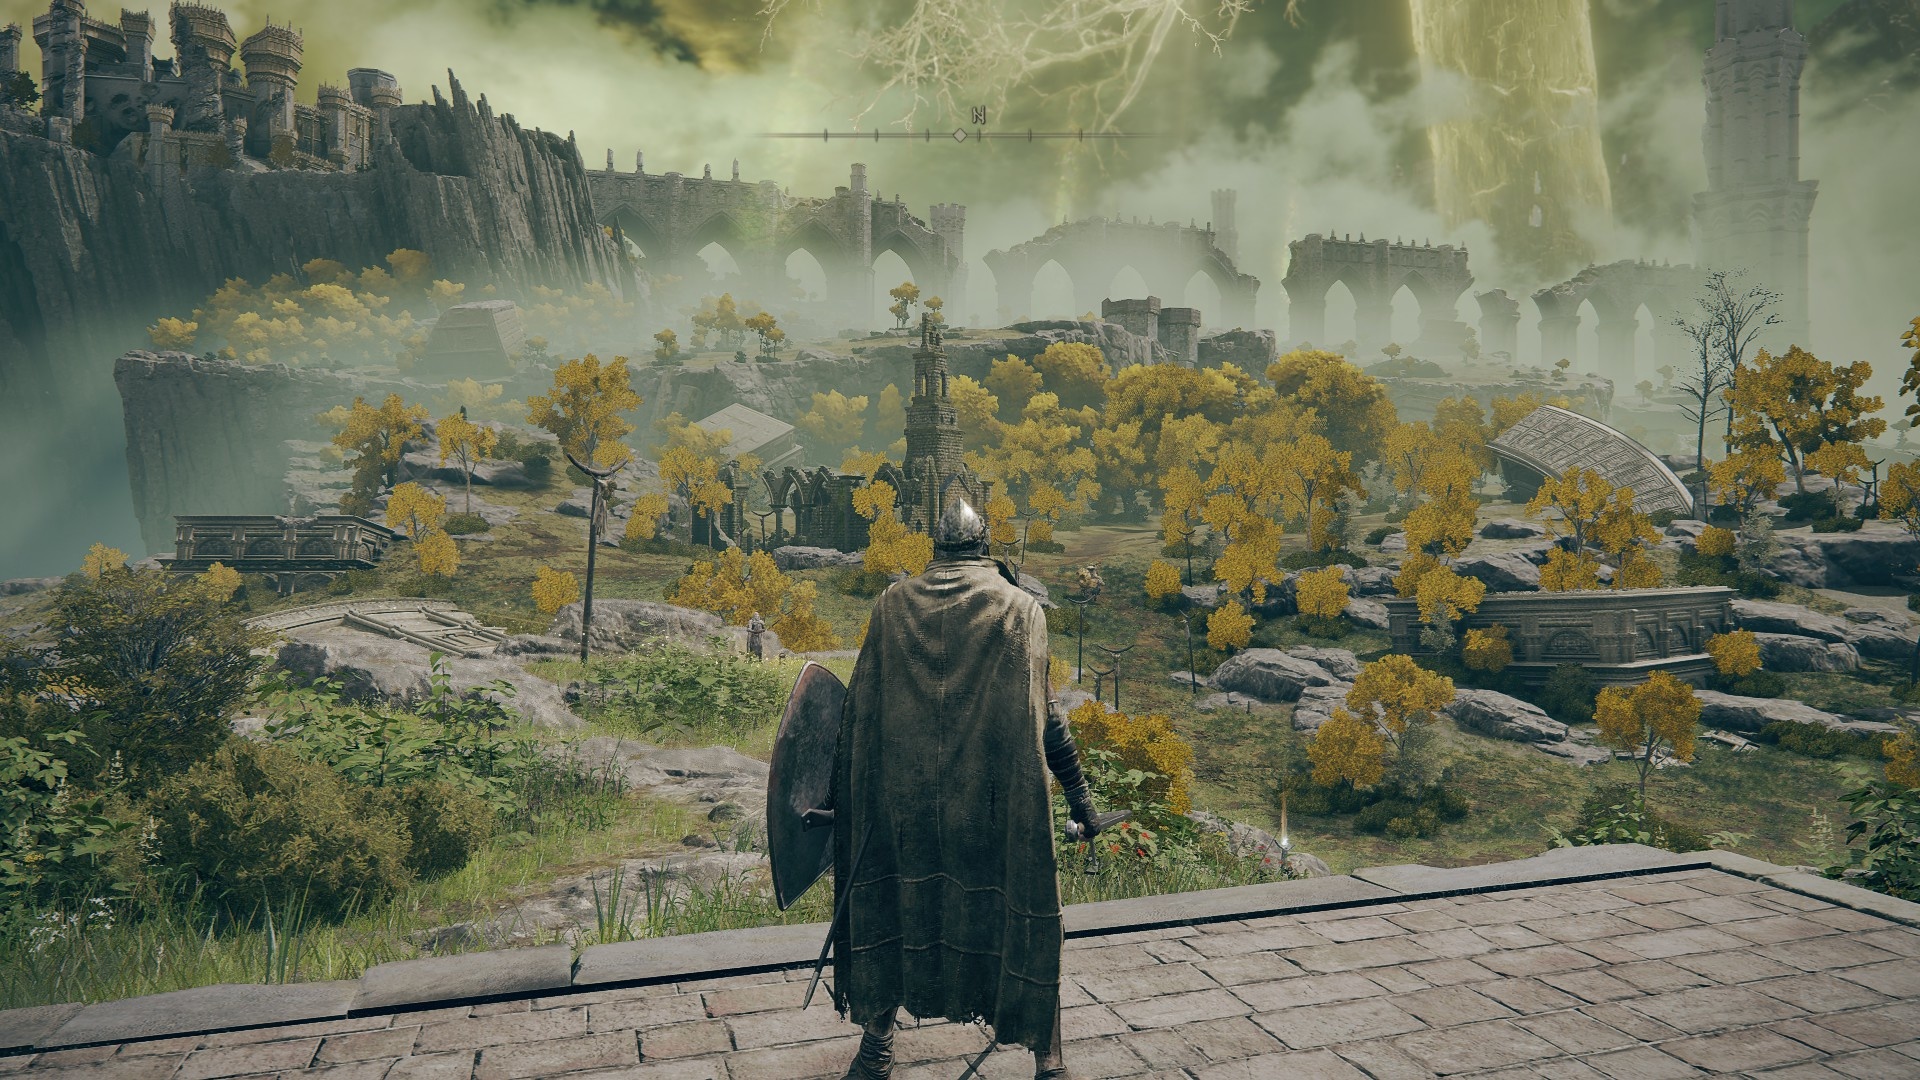 Nawet rzut oka na pierwszy obszar, Limgrave, na początku gry ujawnia wiele interesujących lokacji i szczegółów, takich jak złoty jeździec przemierzający krajobraz czy zniszczony kościół, który może skrywać coś użytecznego.